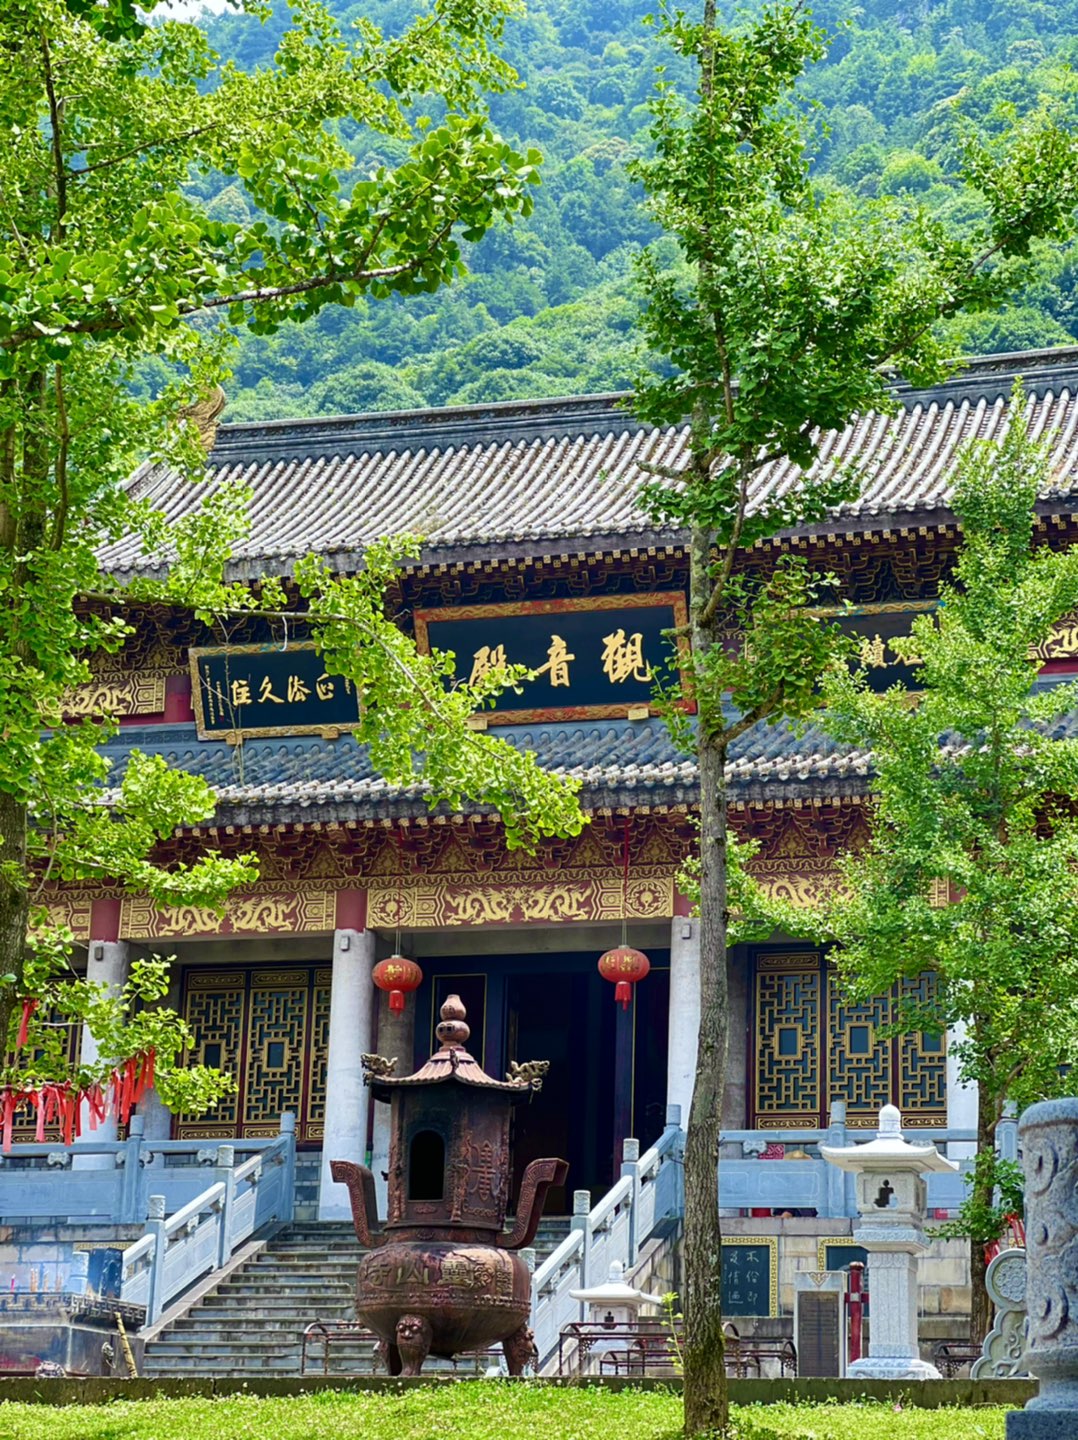 锦州北镇灵山寺风景区图片